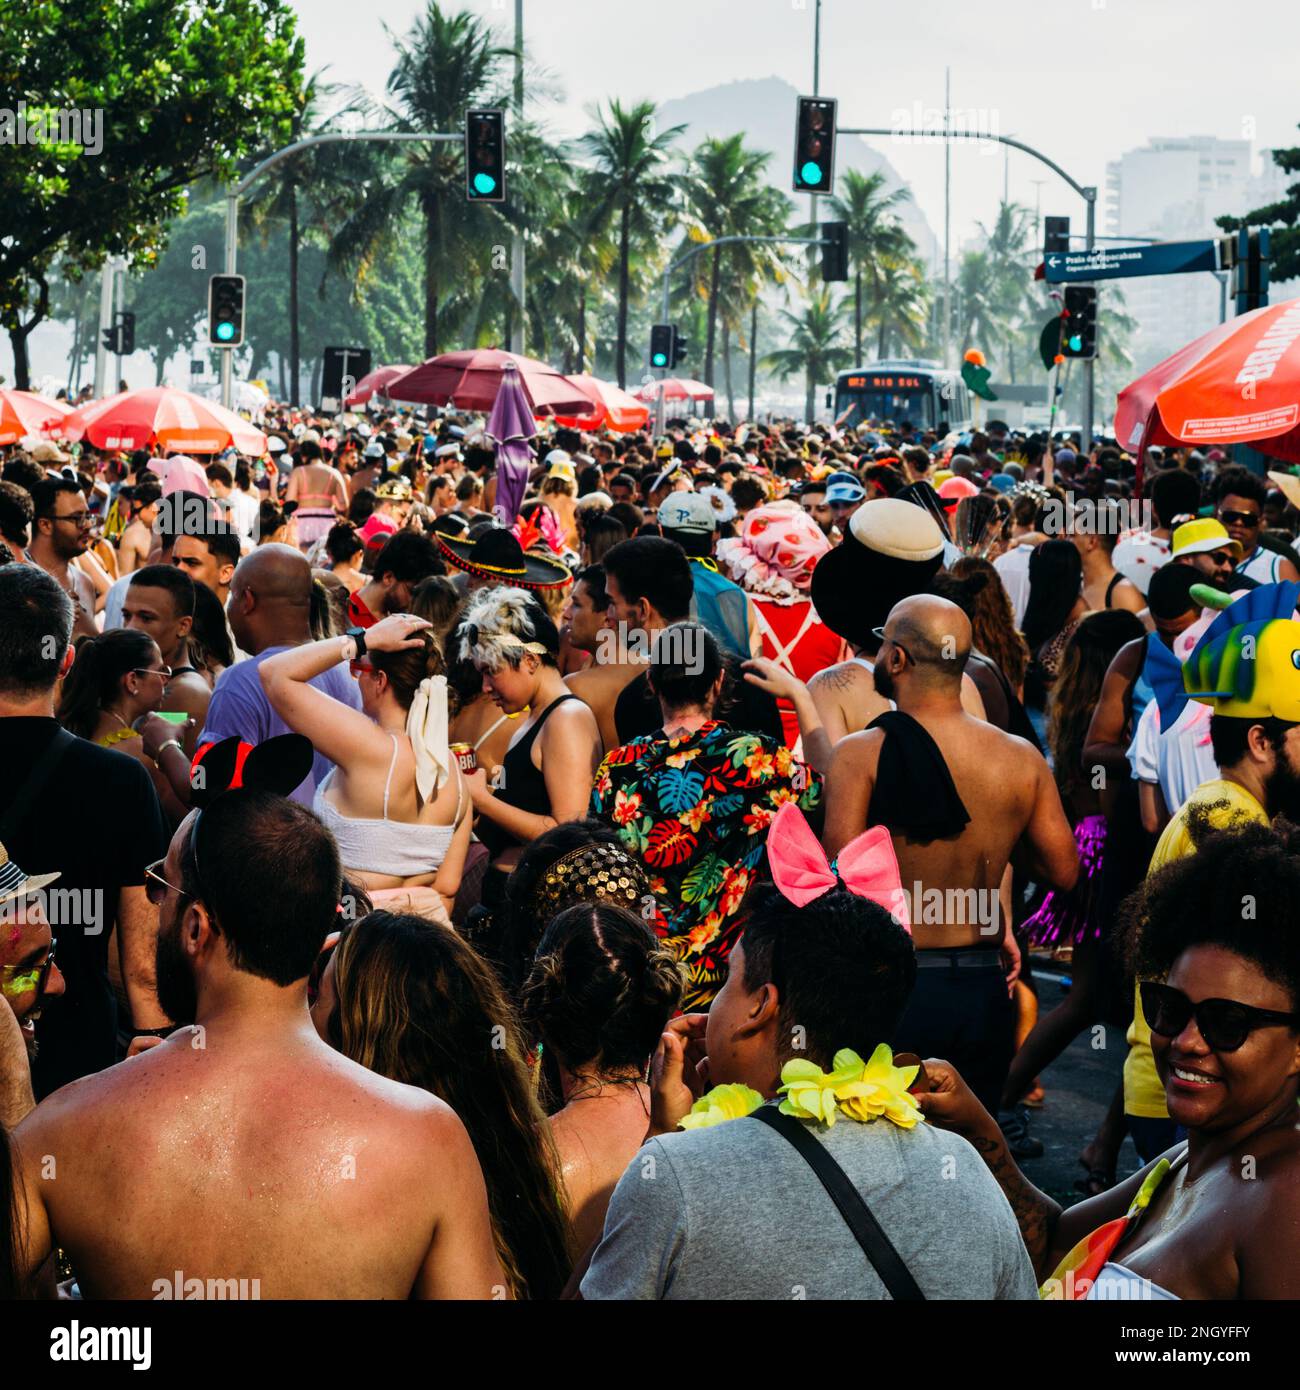 Revelers enjoy a carnival street party bloco in Copacabana, Rio de Janeiro, Brazil Stock Photo